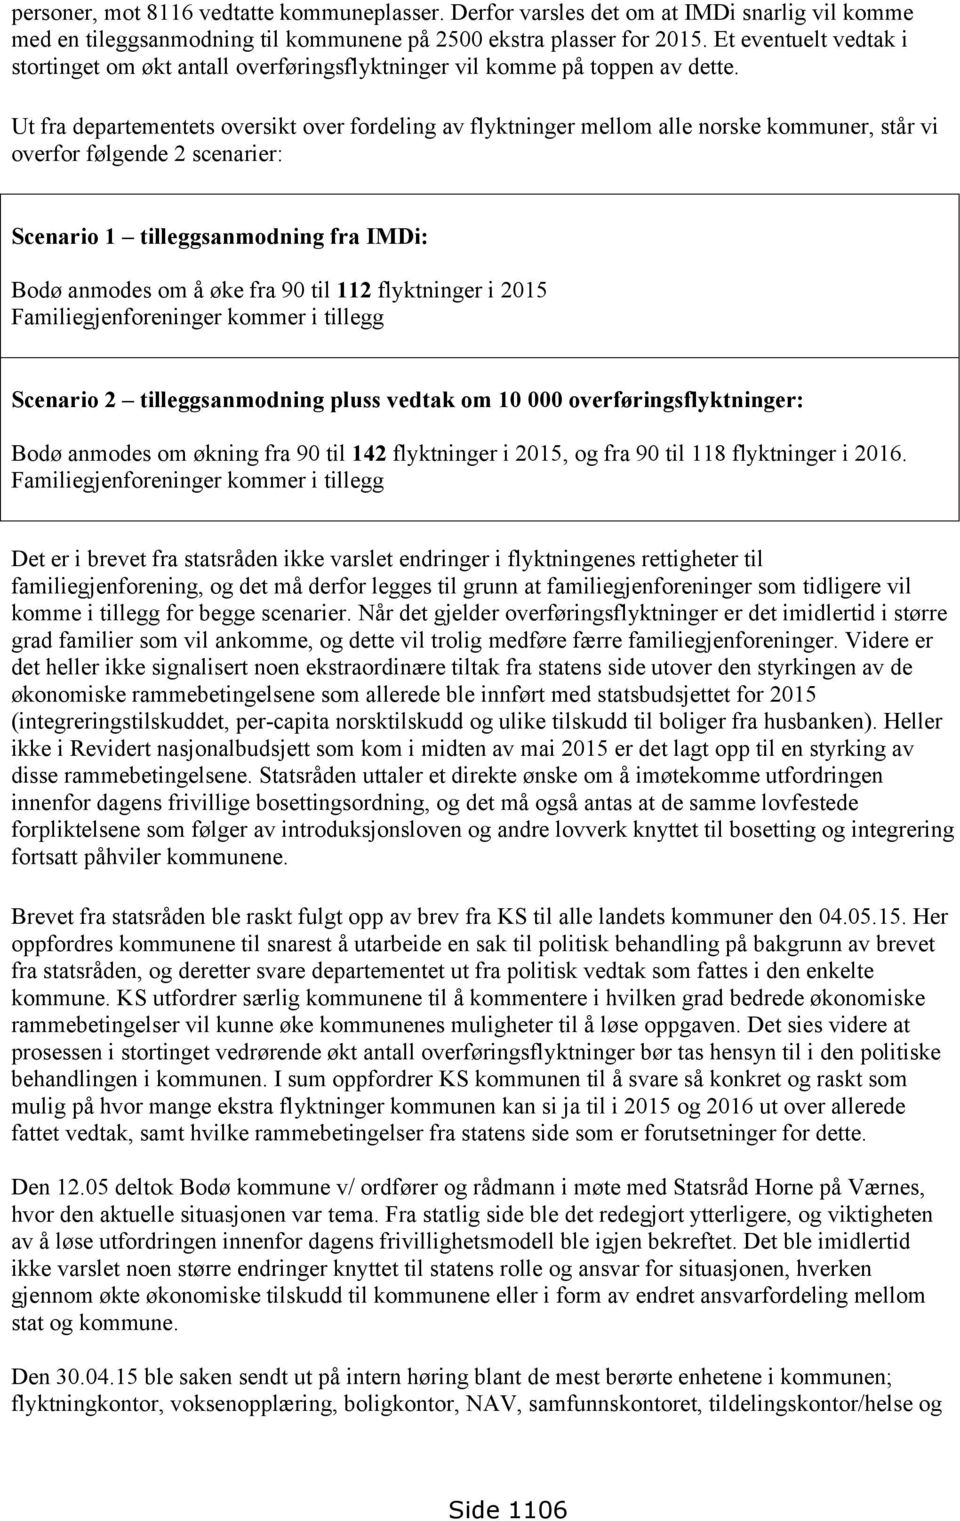 Ut fra departementets oversikt over fordeling av flyktninger mellom alle norske kommuner, står vi overfor følgende 2 scenarier: Scenario 1 tilleggsanmodning fra IMDi: Bodø anmodes om å øke fra 90 til